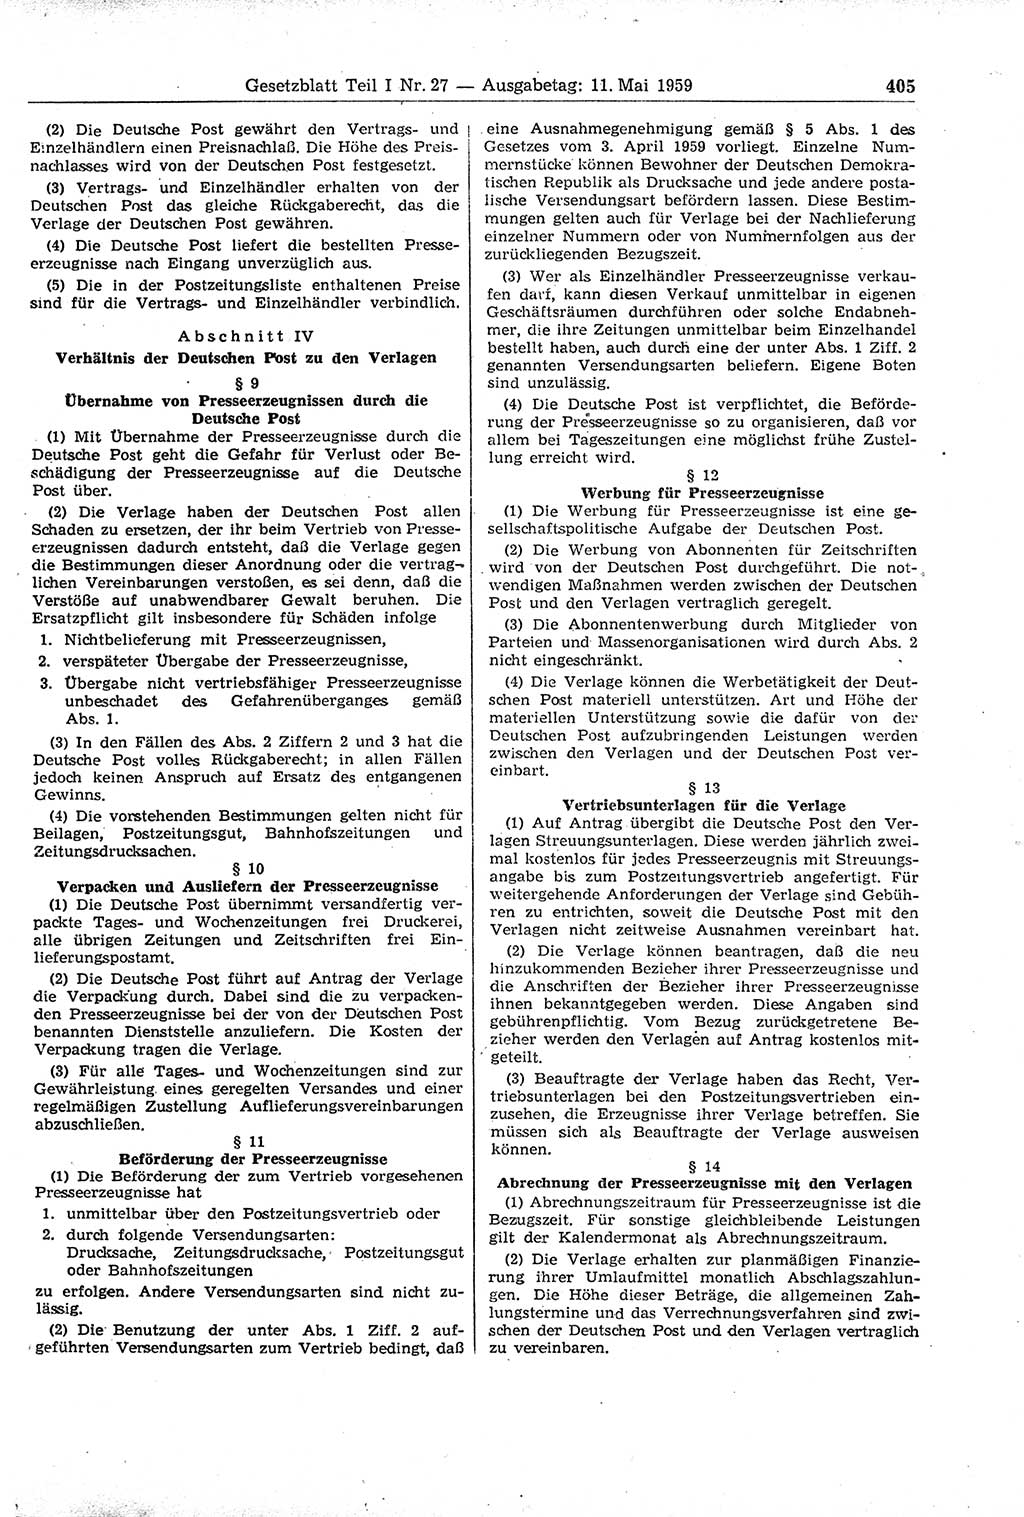 Gesetzblatt (GBl.) der Deutschen Demokratischen Republik (DDR) Teil Ⅰ 1959, Seite 405 (GBl. DDR Ⅰ 1959, S. 405)